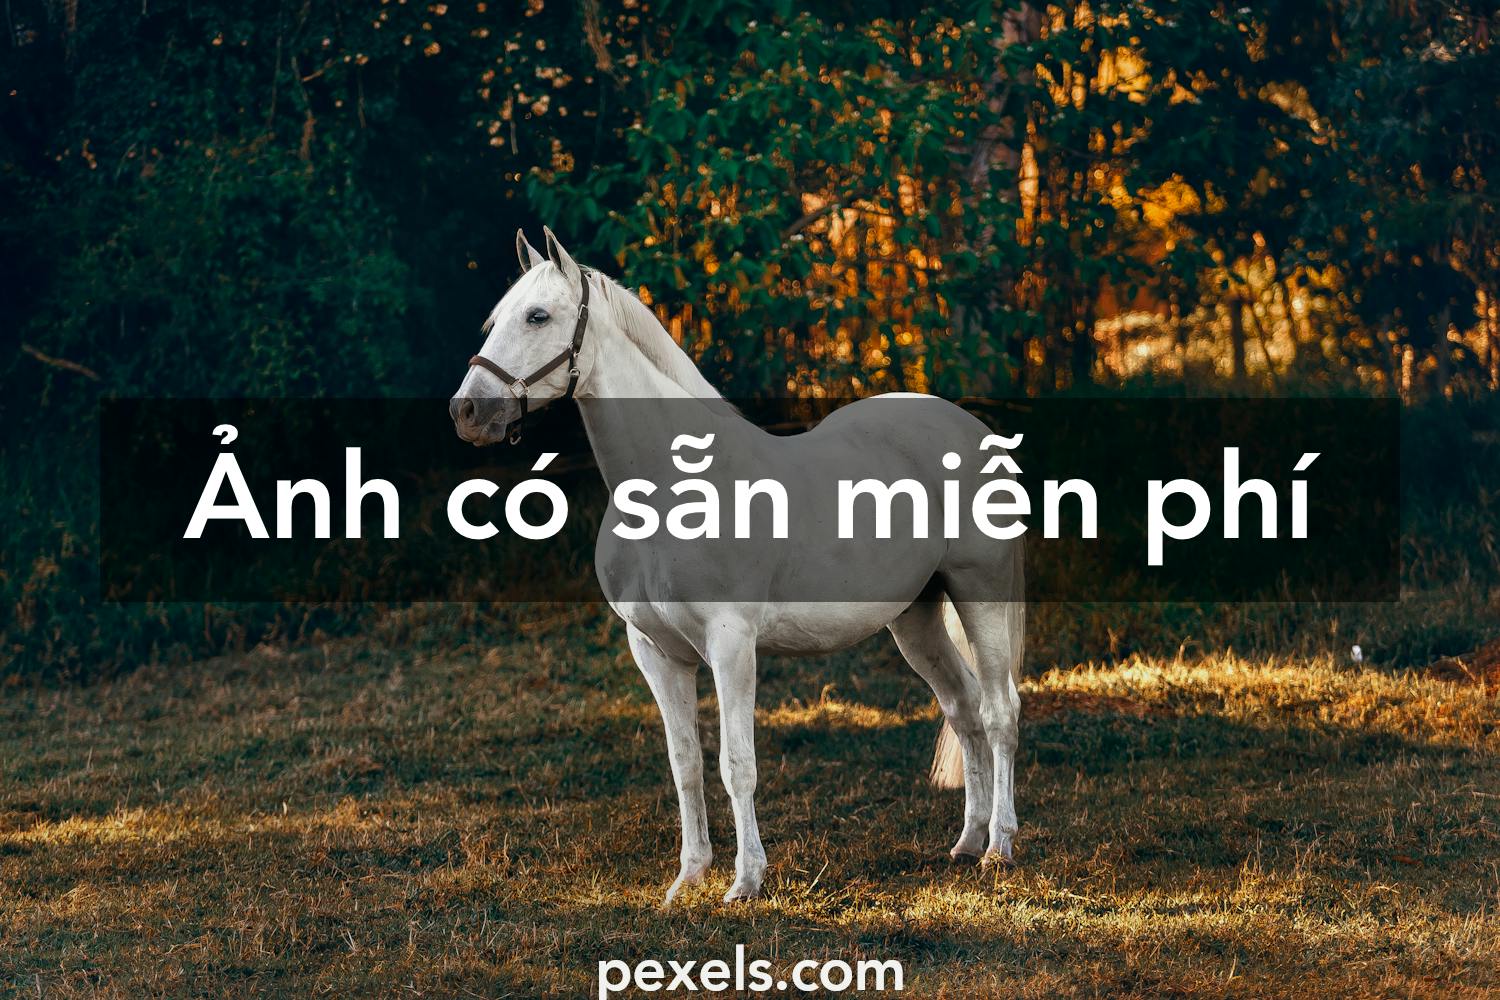 Tải hình ảnh con ngựa đẹp từ những nguồn nào miễn phí trên internet?